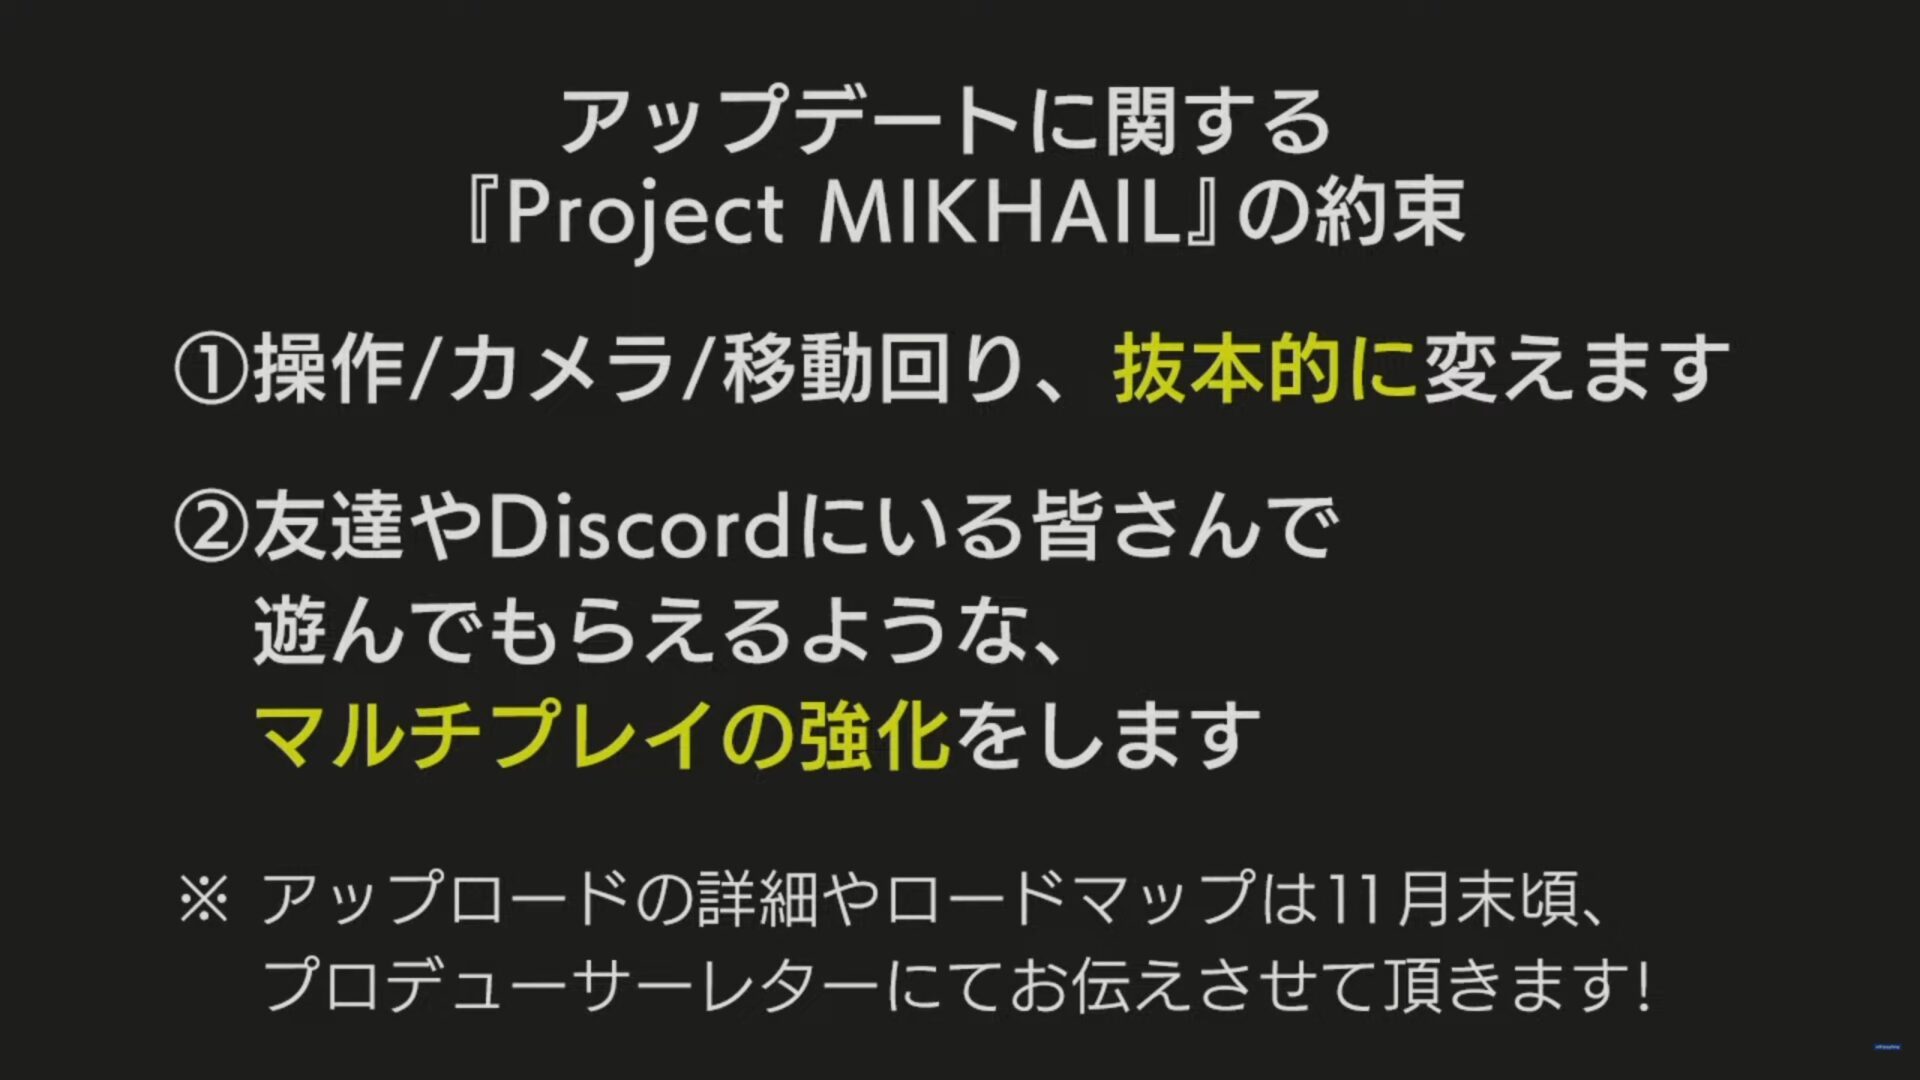 projek-mikhail-3-5826629